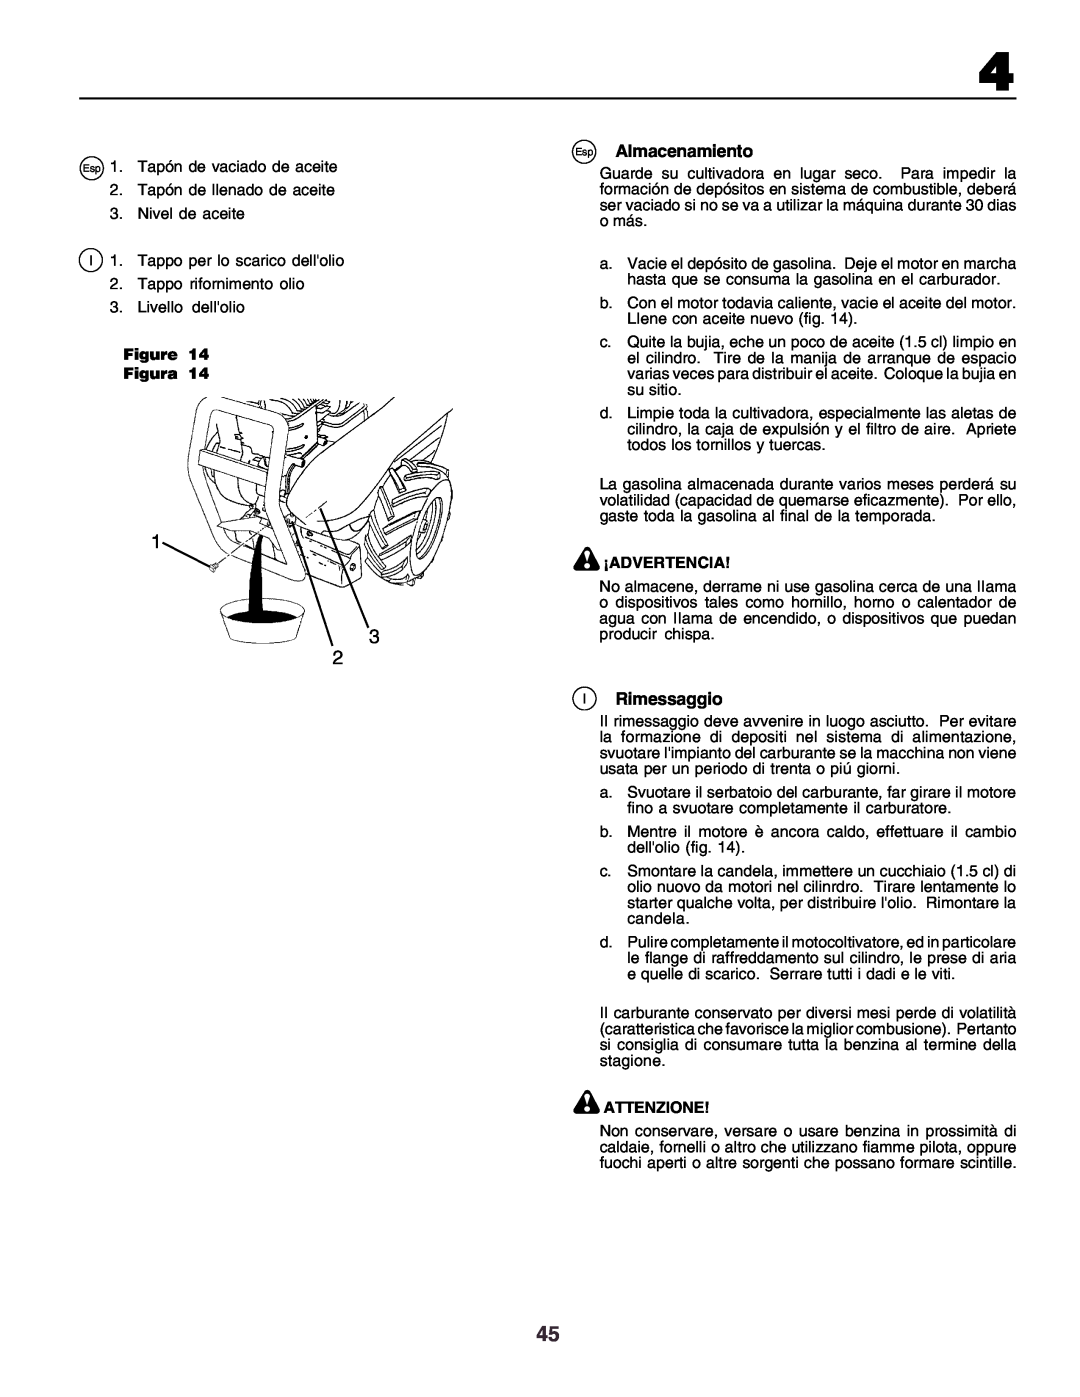 Husqvarna crt51 instruction manual Esp Almacenamiento, IRimessaggio, Figure Figura, ¡Advertencia, Attenzione 